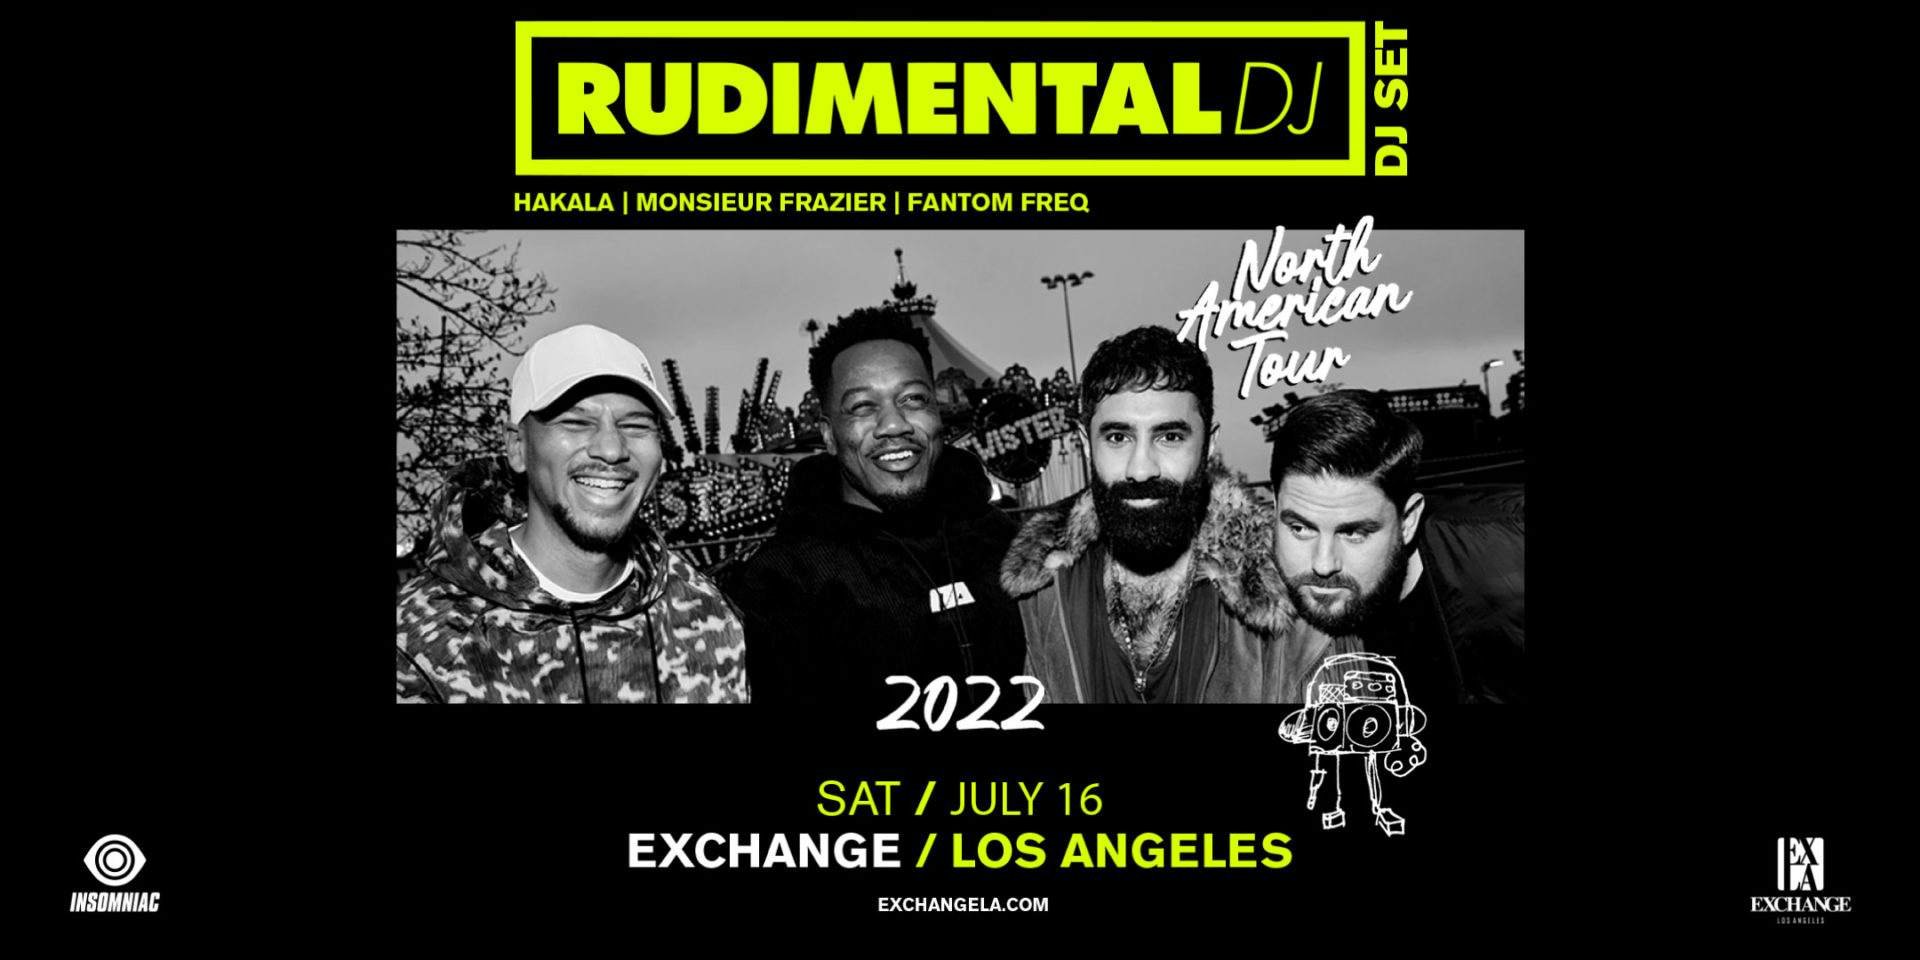 Ruidmental (DJ Set) - Página frontal